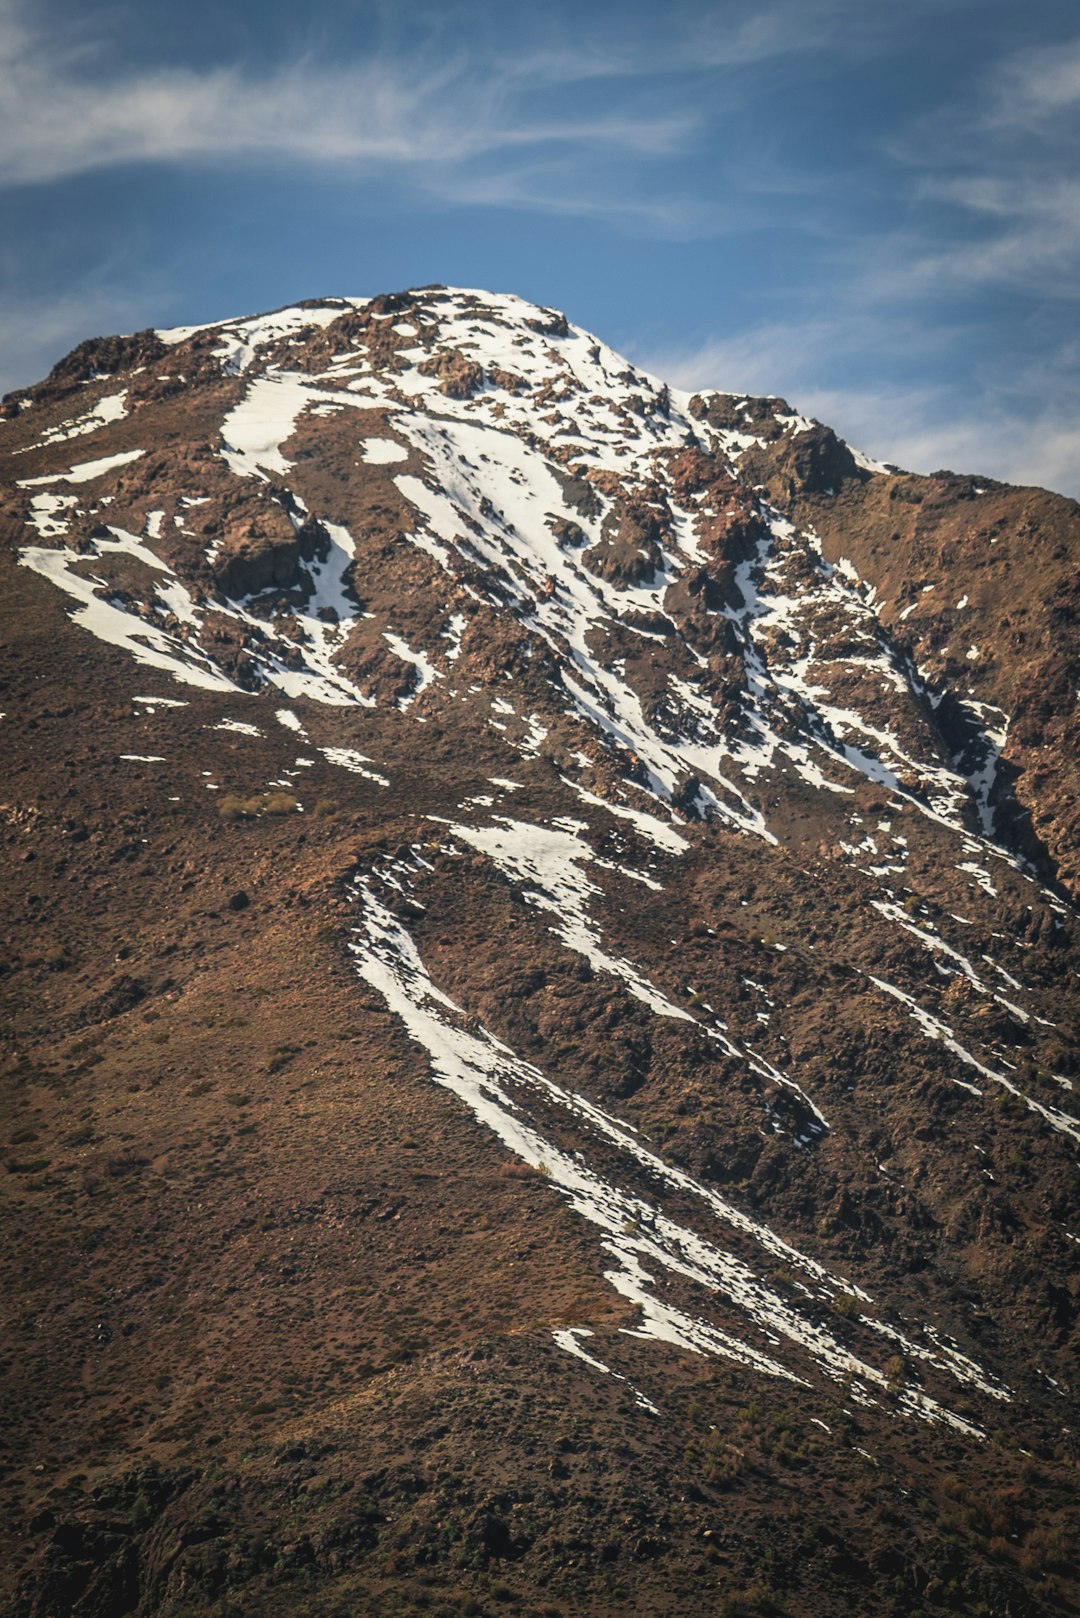 Mountain range photo spot Cerro Provincia Chile